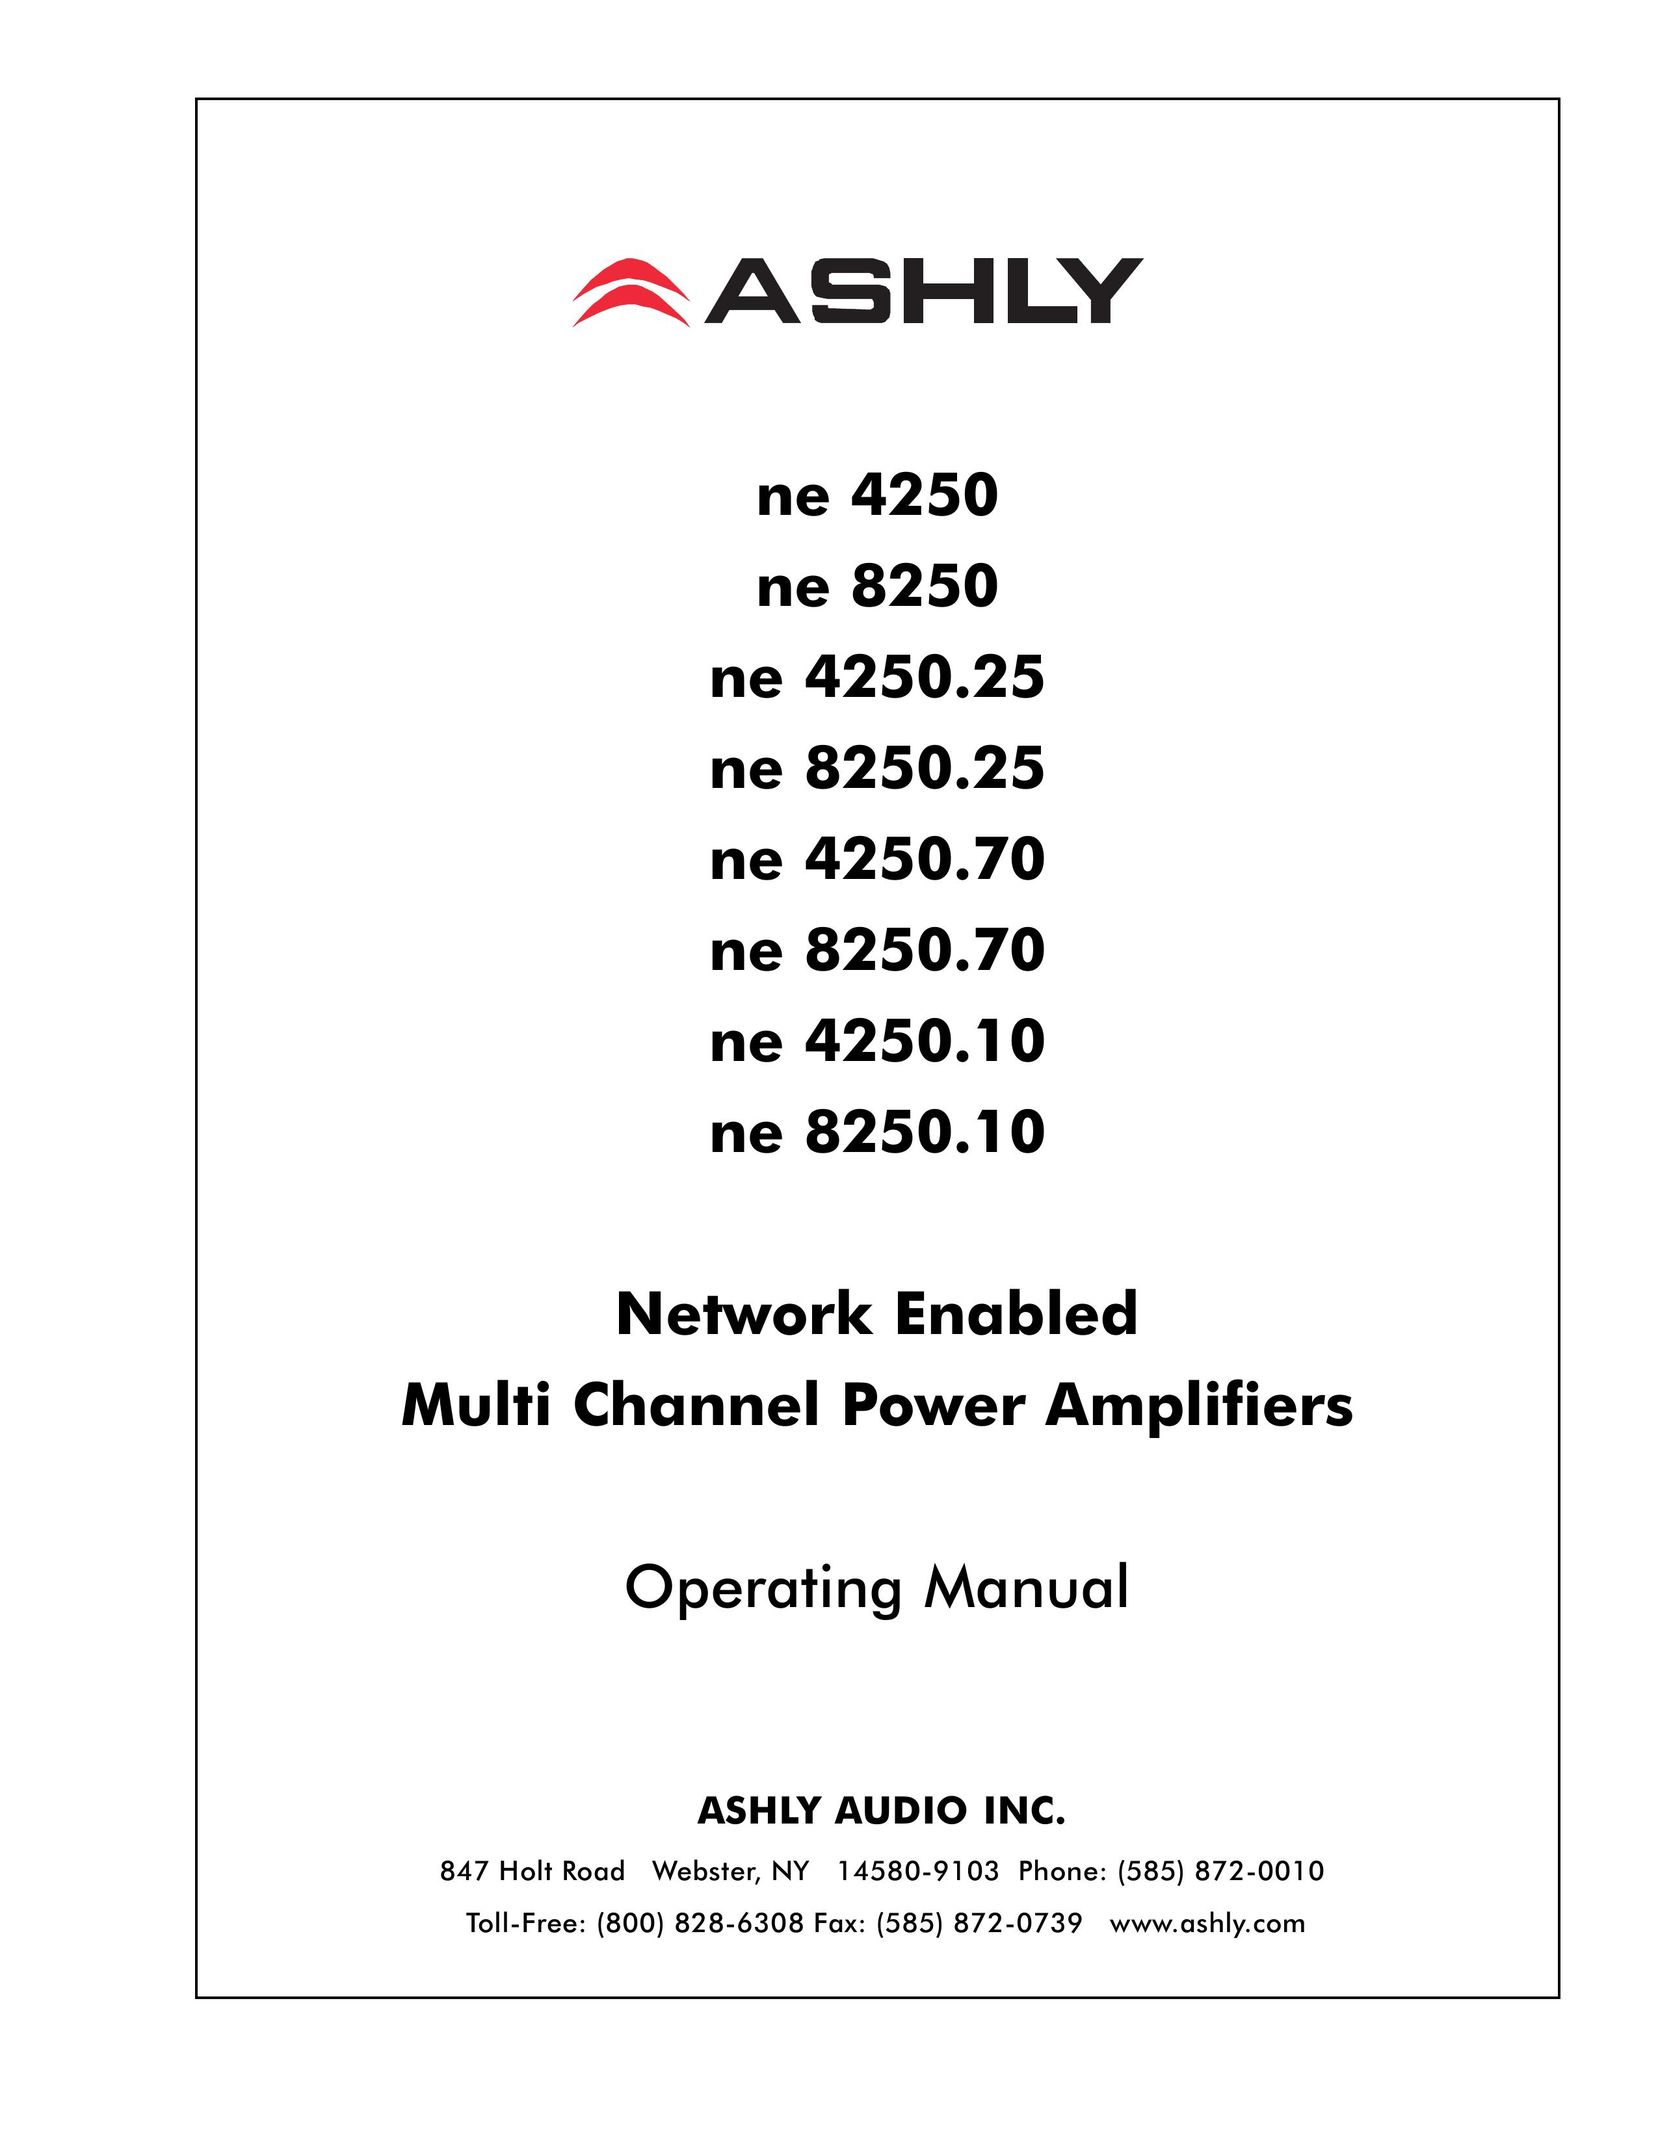 Ashly ne 8250.70 Stereo Amplifier User Manual